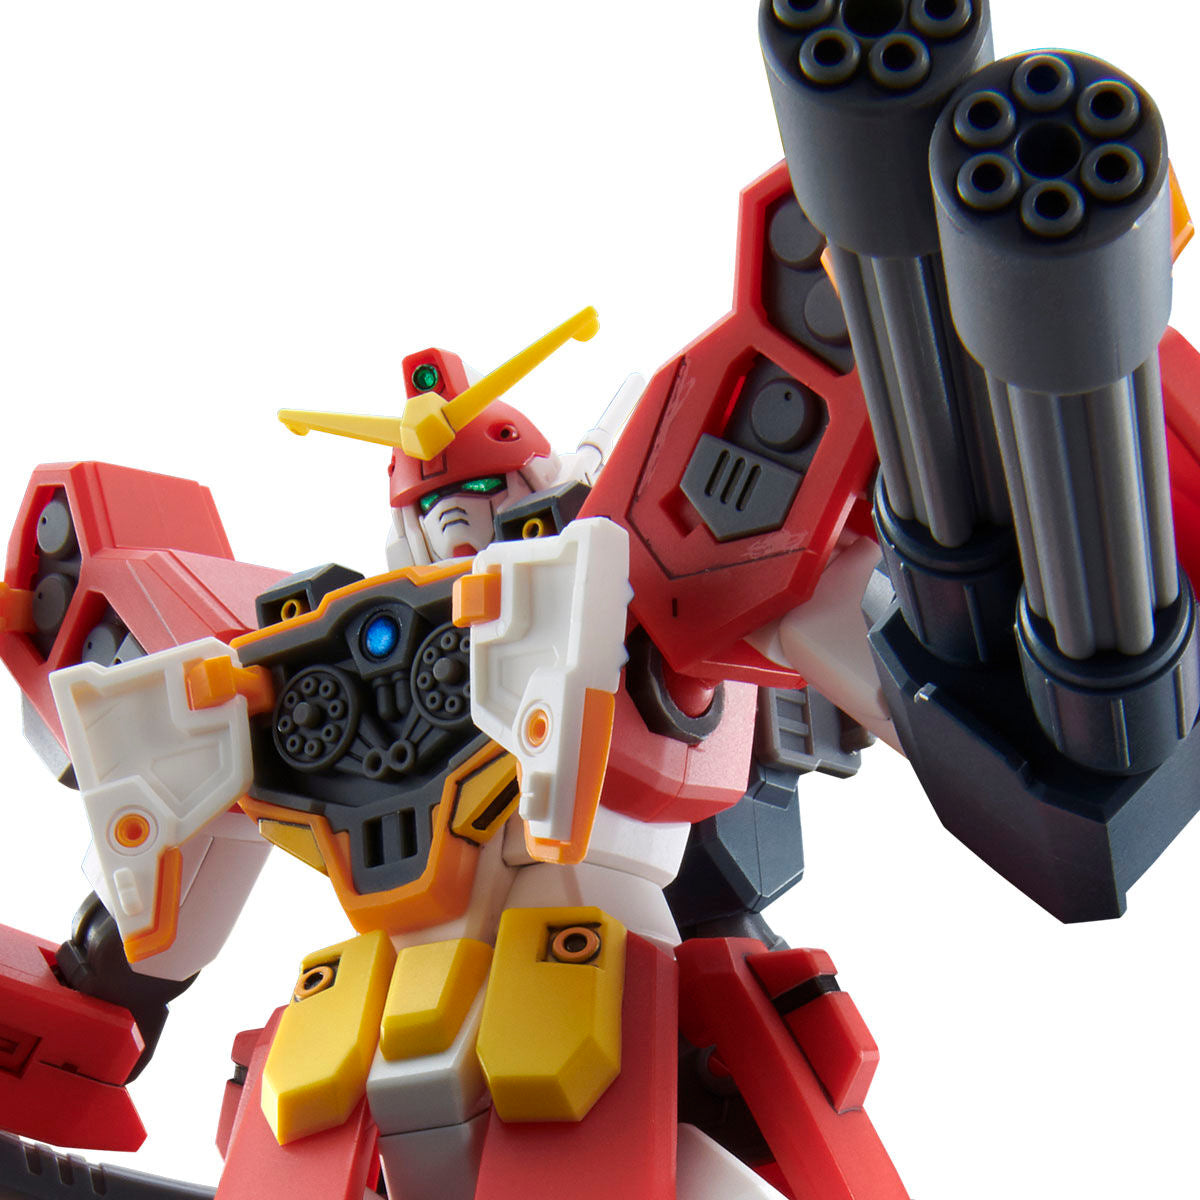 HG XXXG-01H2 Gundam HeavyArms Custom - P-Bandai 1/144